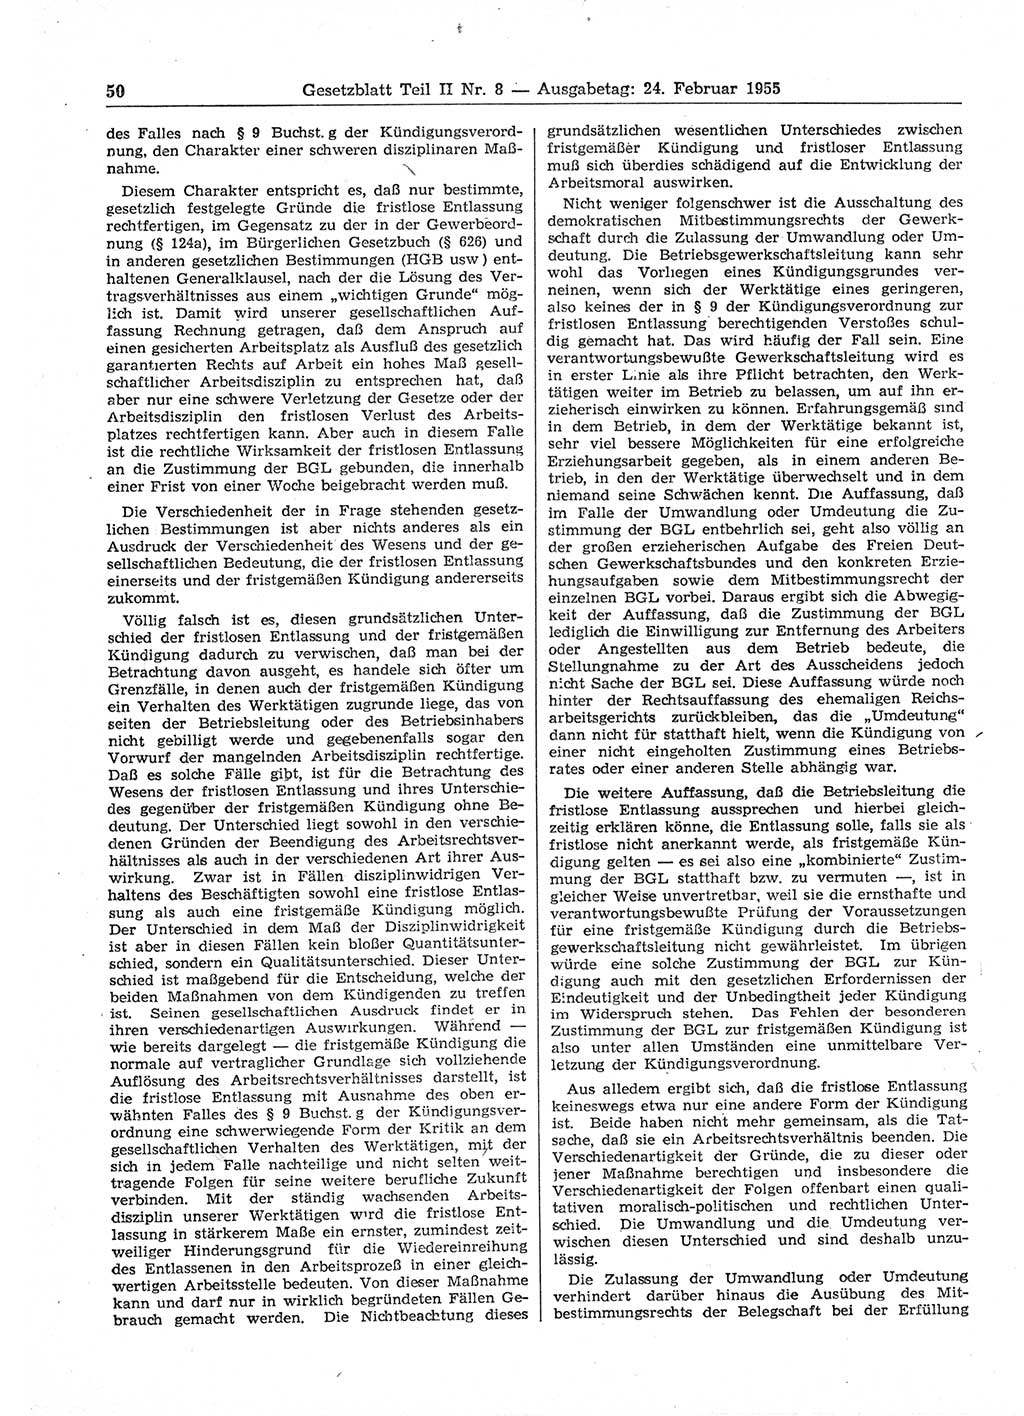 Gesetzblatt (GBl.) der Deutschen Demokratischen Republik (DDR) Teil ⅠⅠ 1955, Seite 50 (GBl. DDR ⅠⅠ 1955, S. 50)